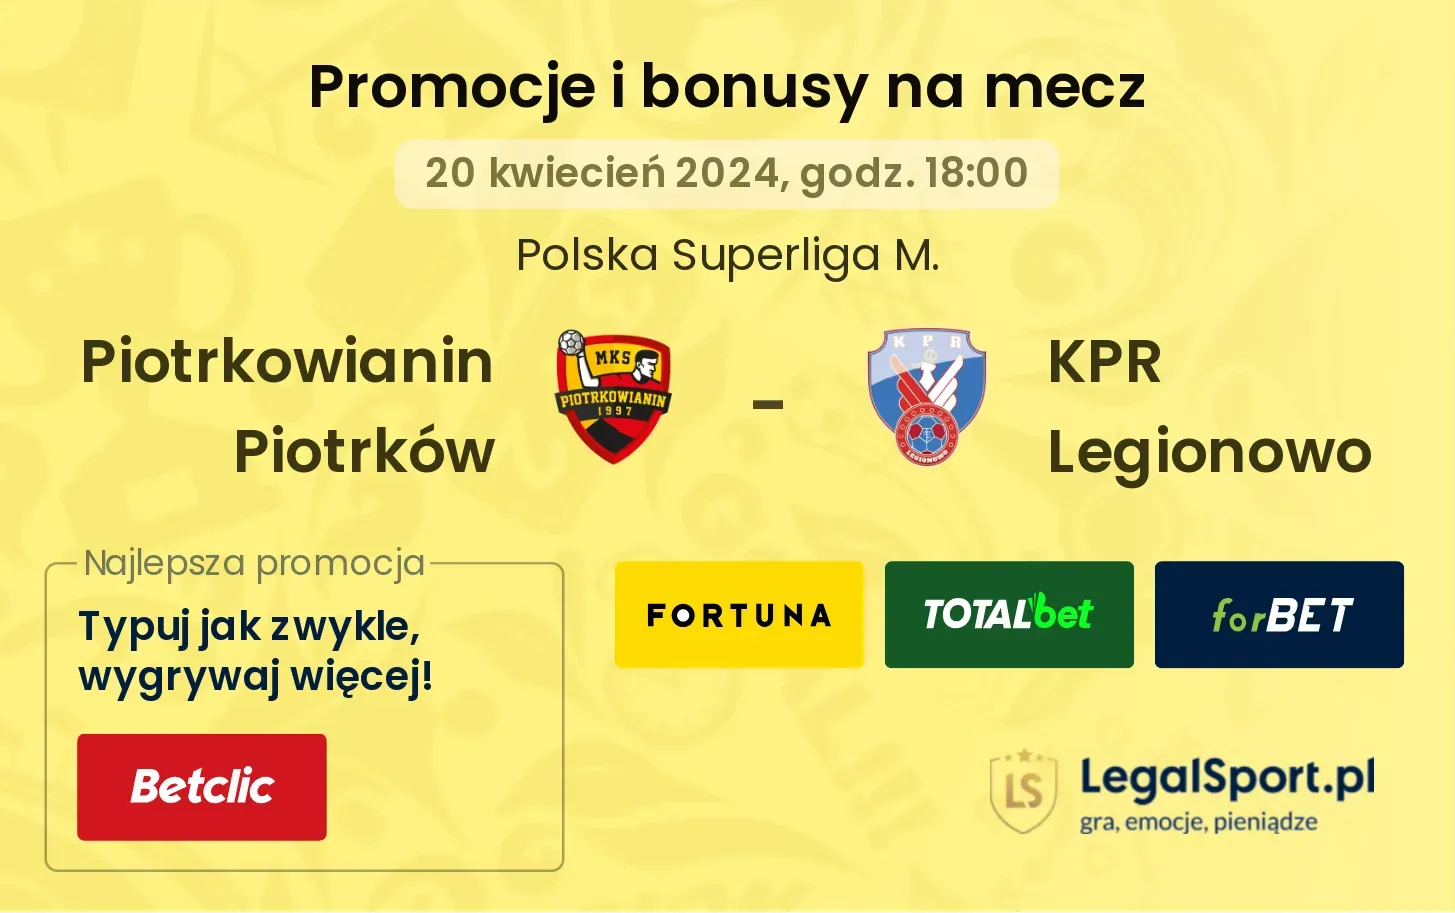 Piotrkowianin Piotrków - KPR Legionowo promocje bonusy na mecz